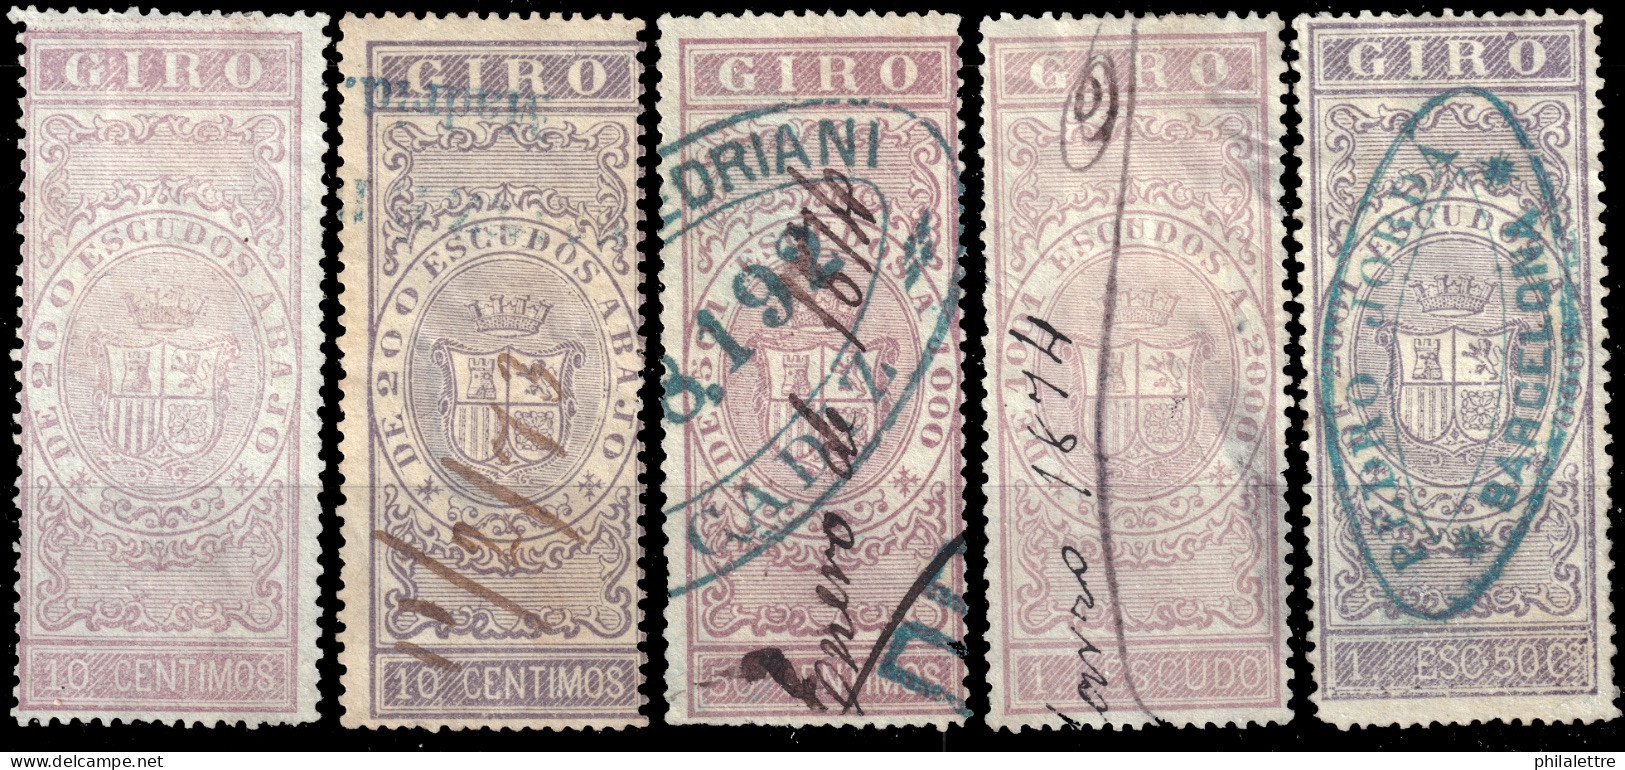 ESPAGNE / ESPANA / SPAIN - 1870 - SELLOS PARA GIRO 10c Sin Goma, 10c, 50c, 1Esc. & 1,50Esc.uso Fiscal Ed.43, 43a, 44/46 - Revenue Stamps